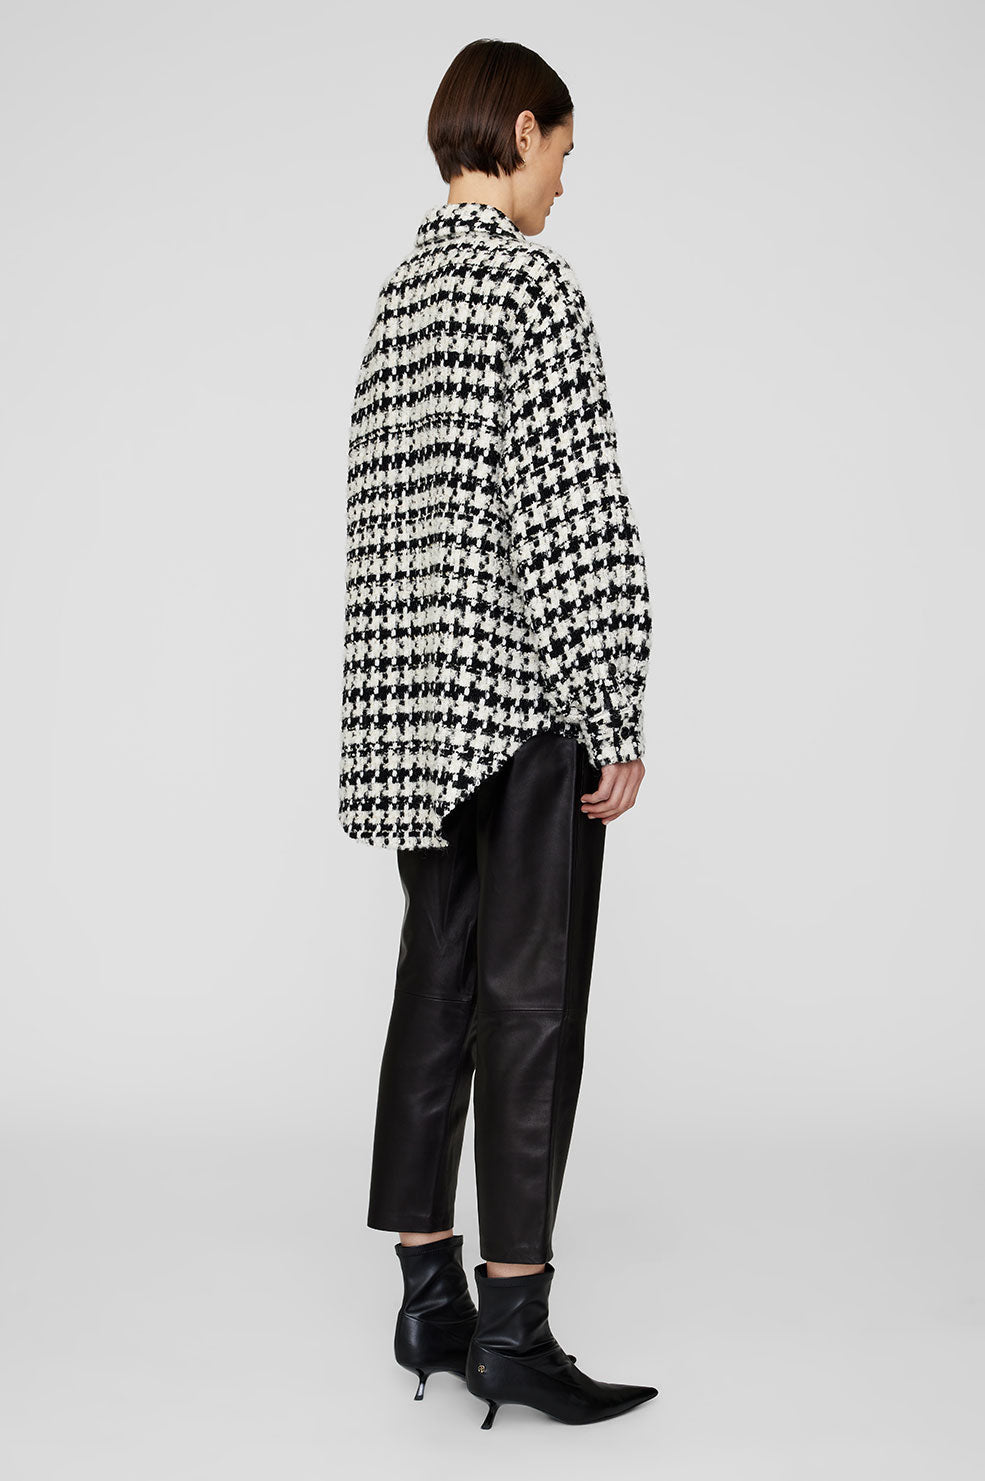 Anine Bing - Sloan Jacket in Black & White